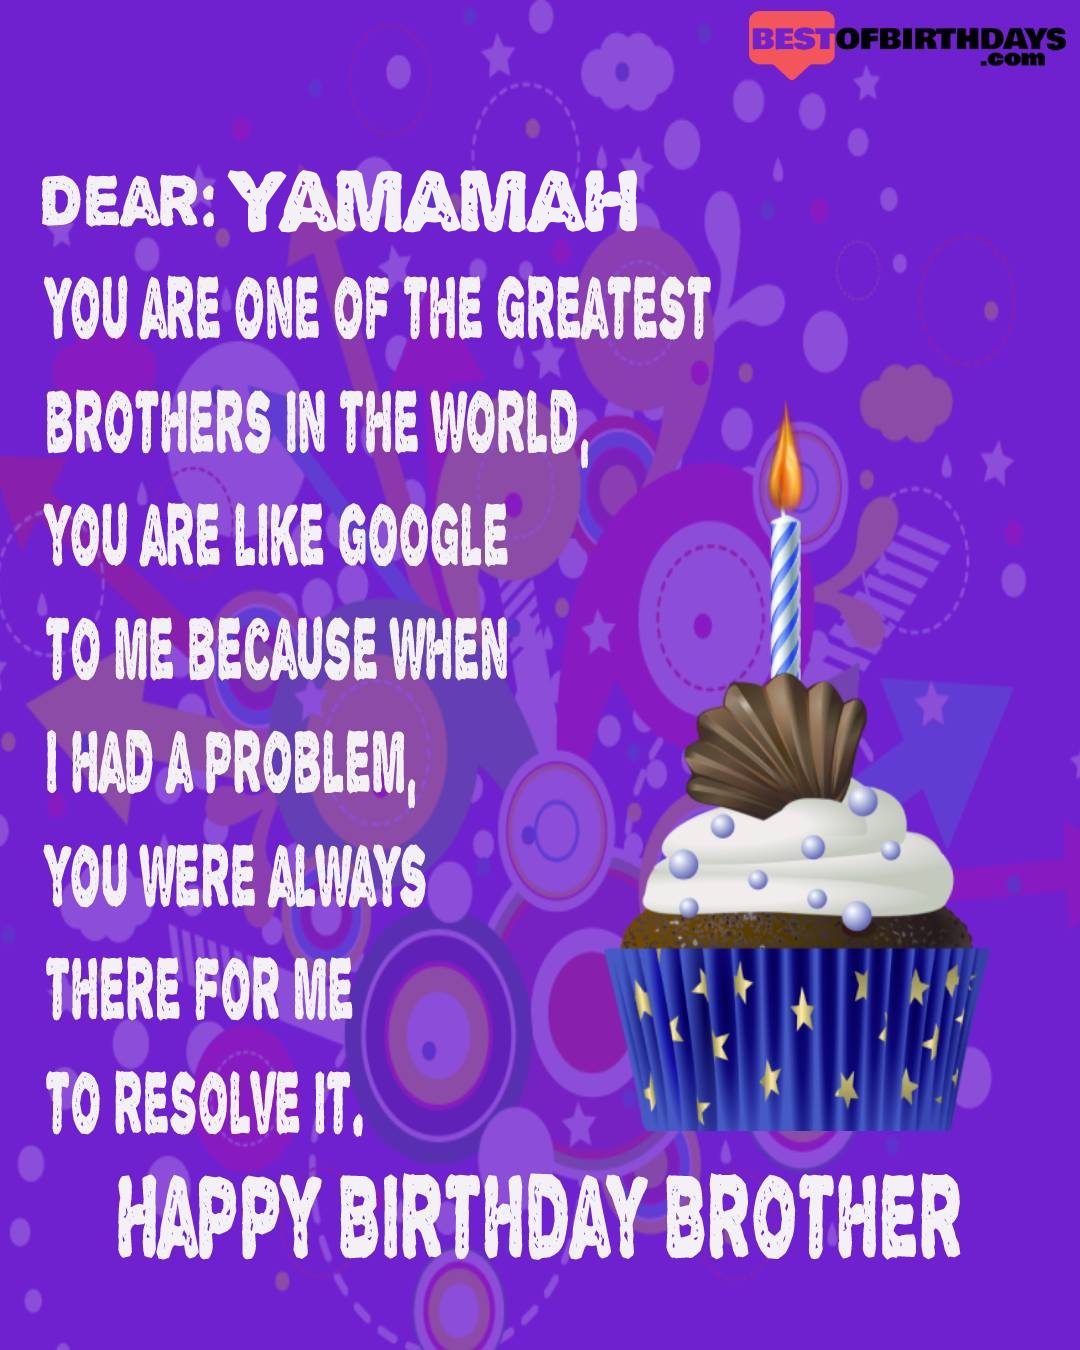 Happy birthday yamamah bhai brother bro